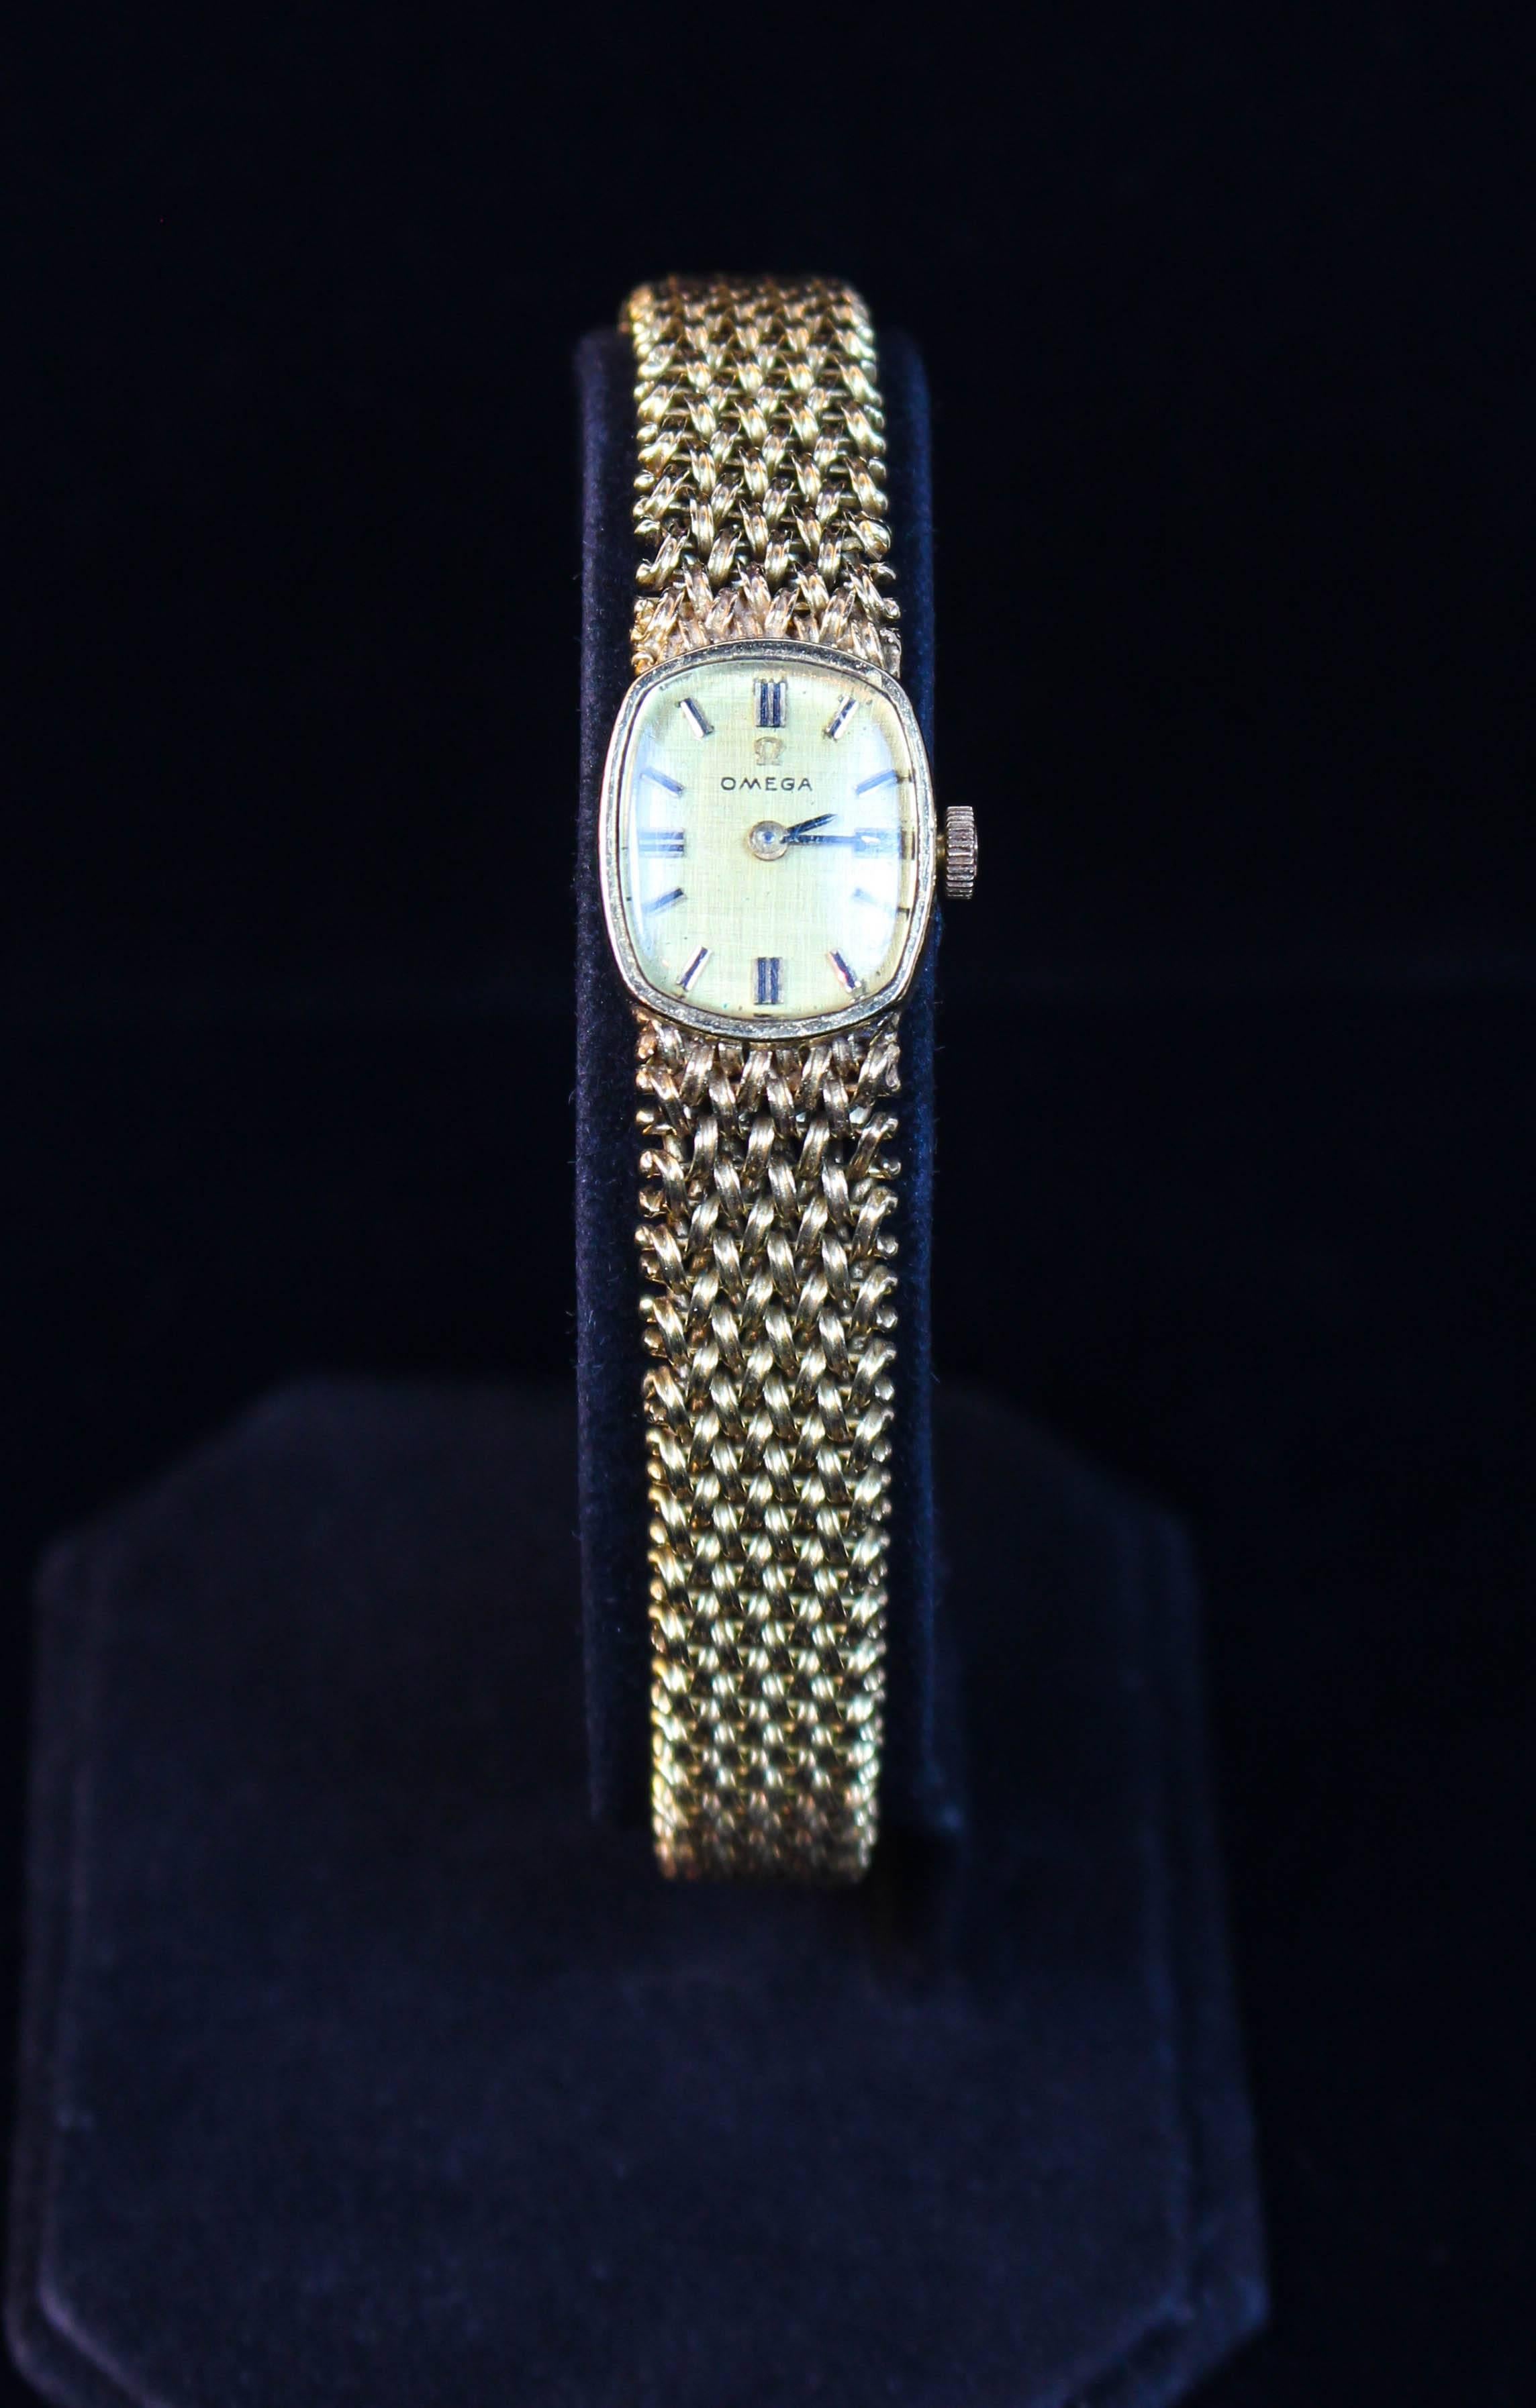 Cette montre Omega est composée d'or jaune 14 KT. Bretelles à motifs tissés. Un beau design classique, avec une fermeture réglable. En parfait état.
Vintage Circa 1978

N'hésitez pas à poser vos questions, nous sommes à votre disposition. 

Specs